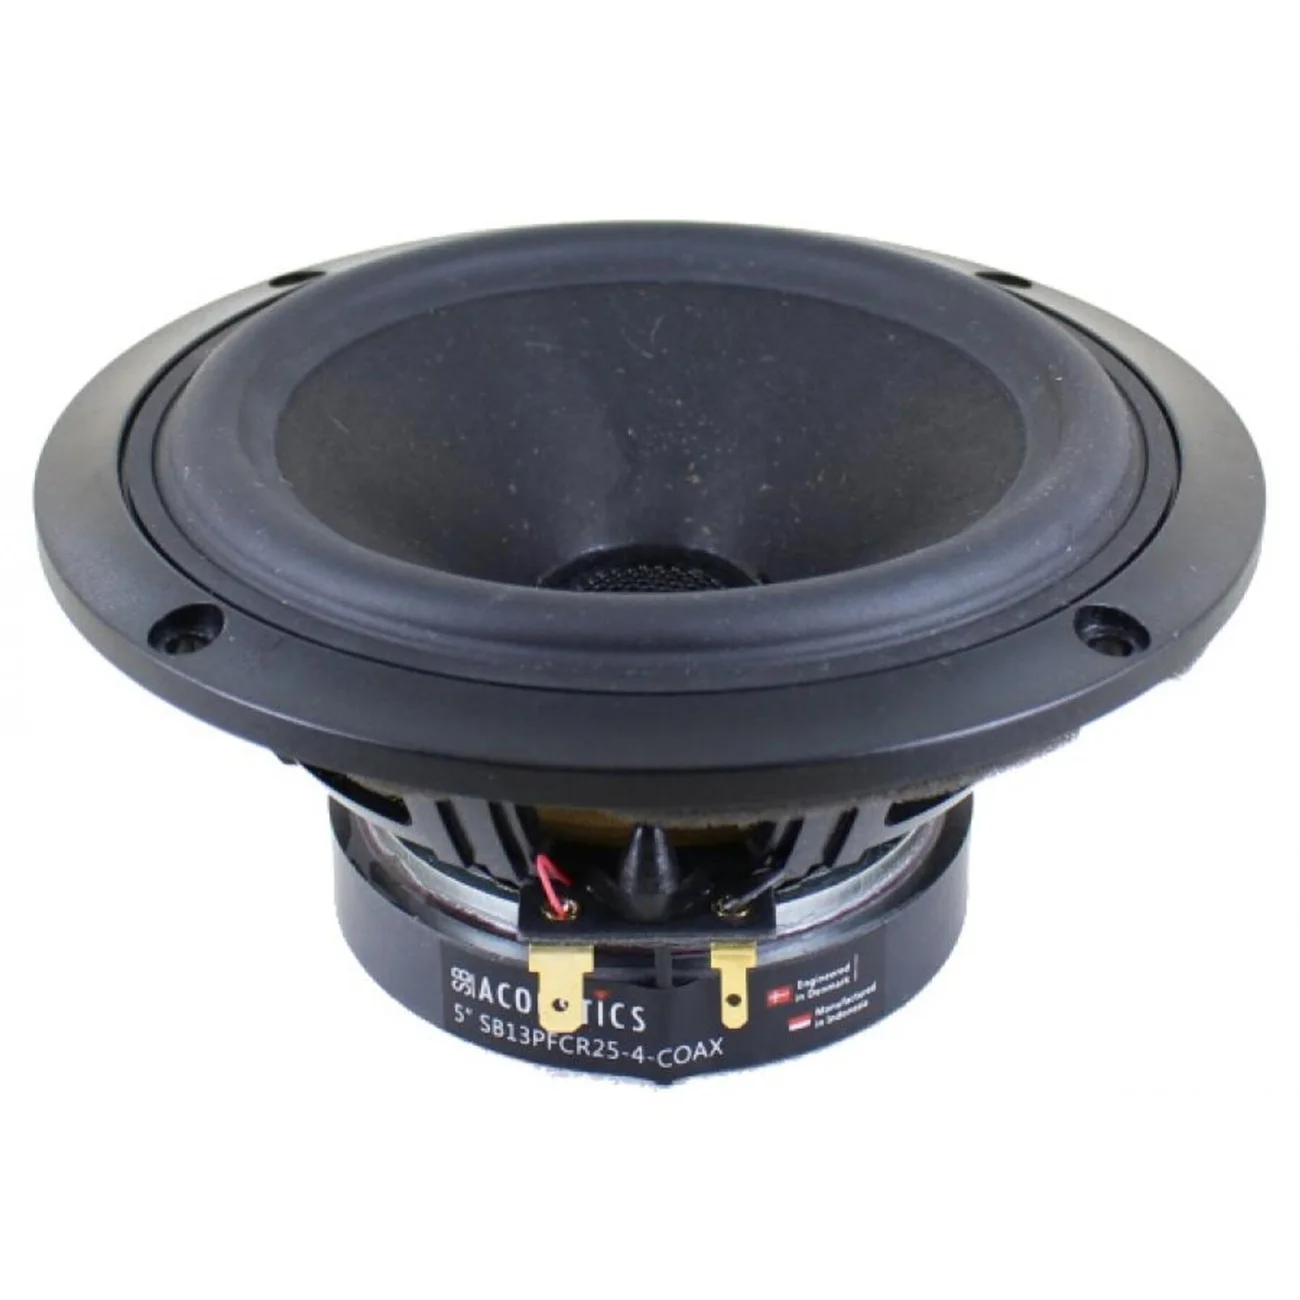 Coaxiale hi-fi - SB Acoustics SB13PFCR25-4-COAX, audioclub.ro